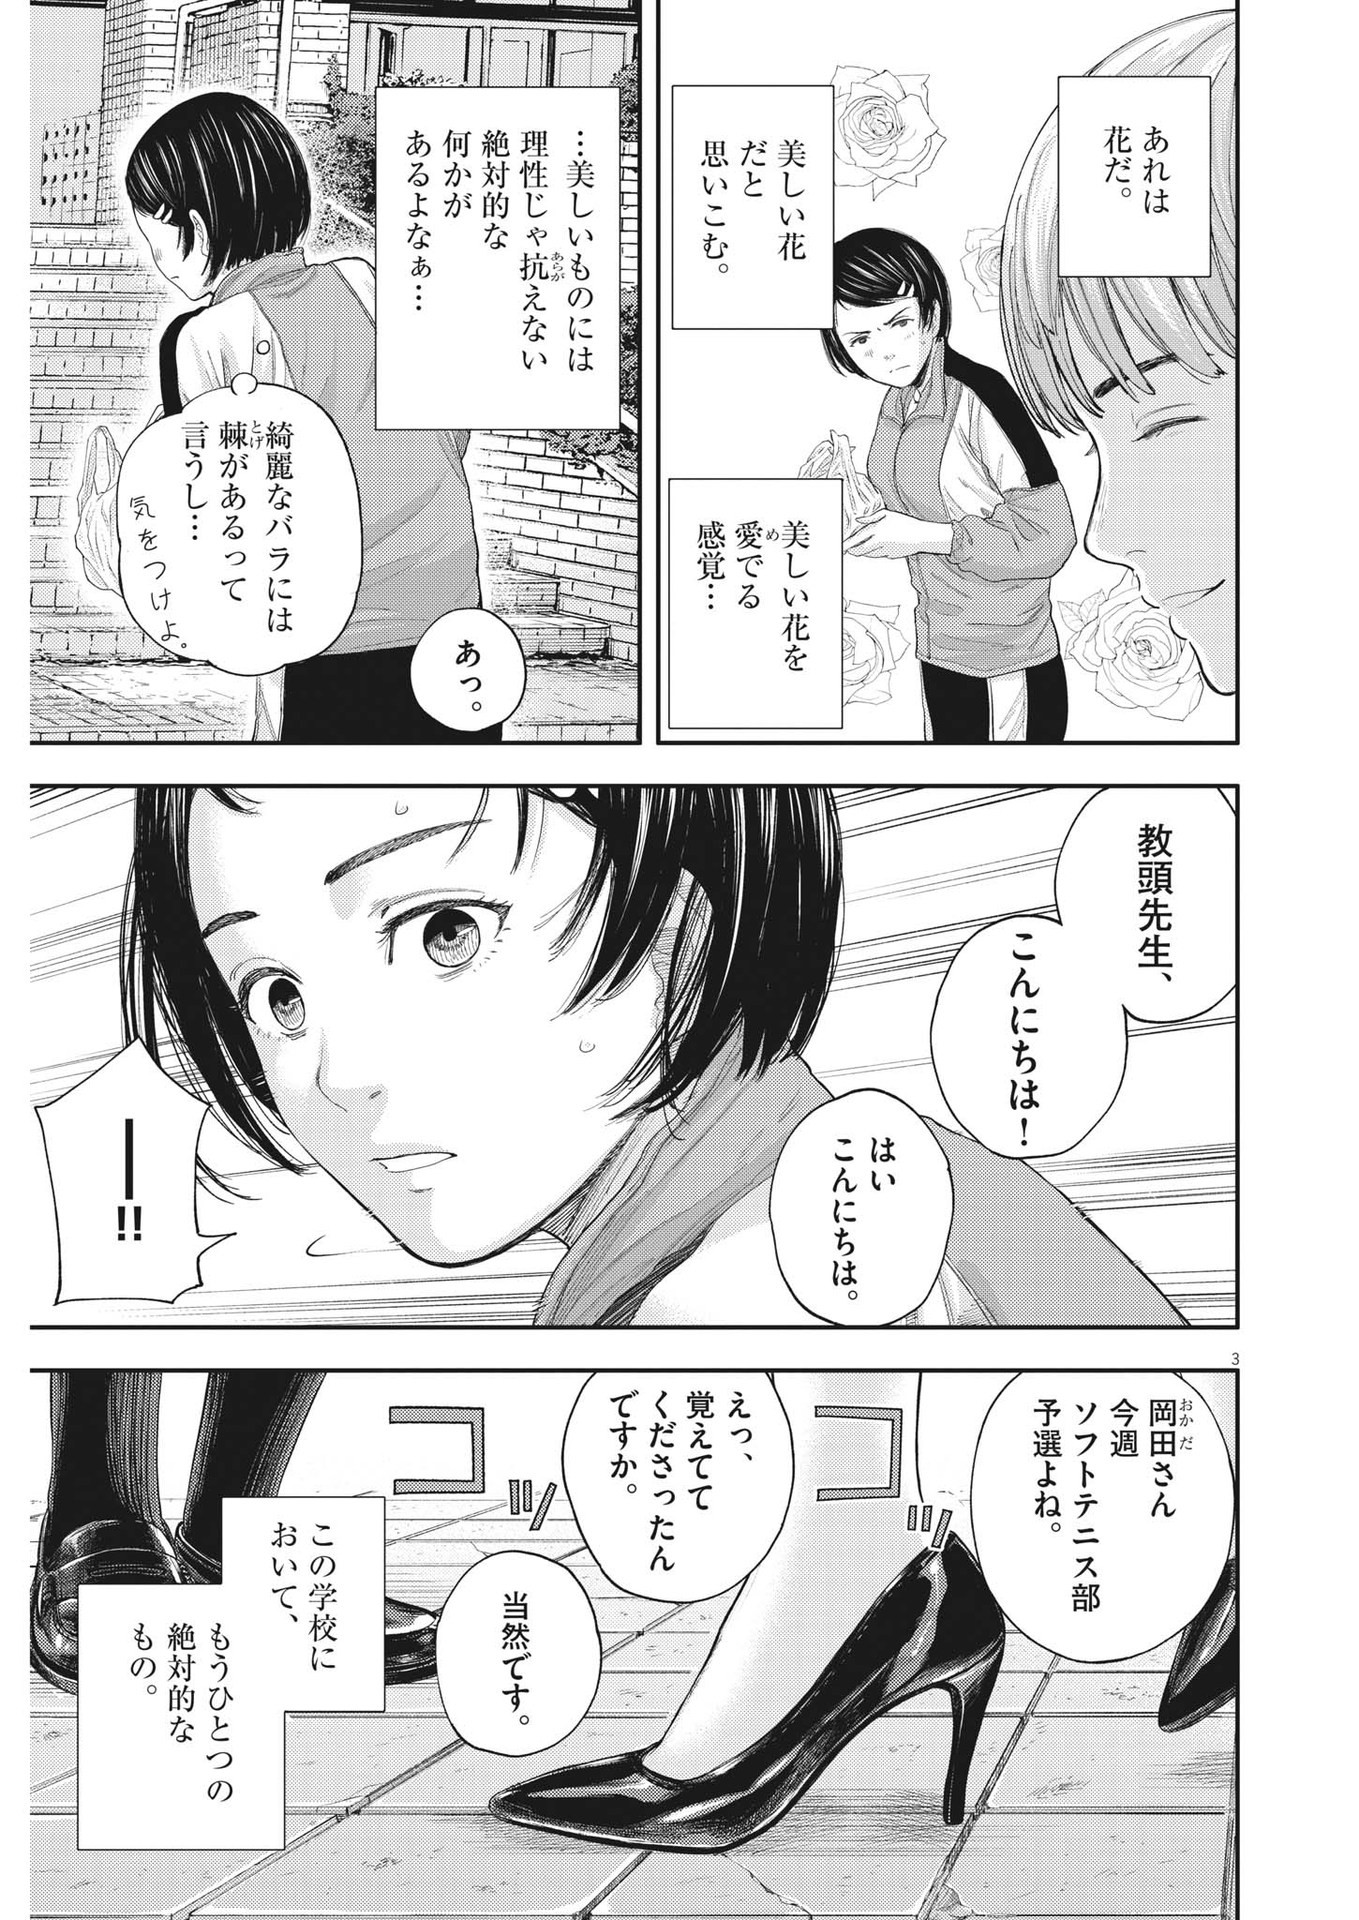 Yumenashi-sensei no Shinroshidou - Chapter 6 - Page 3